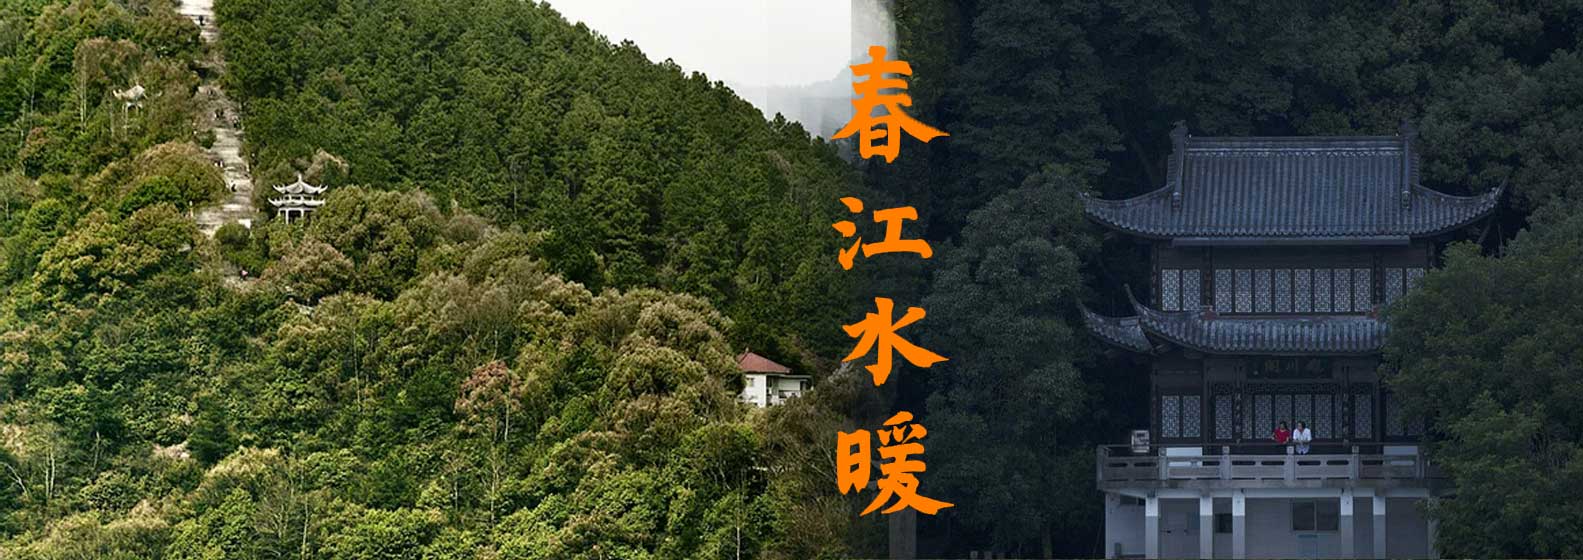 Séjours Dans Les Monts Fuchun - Header Image